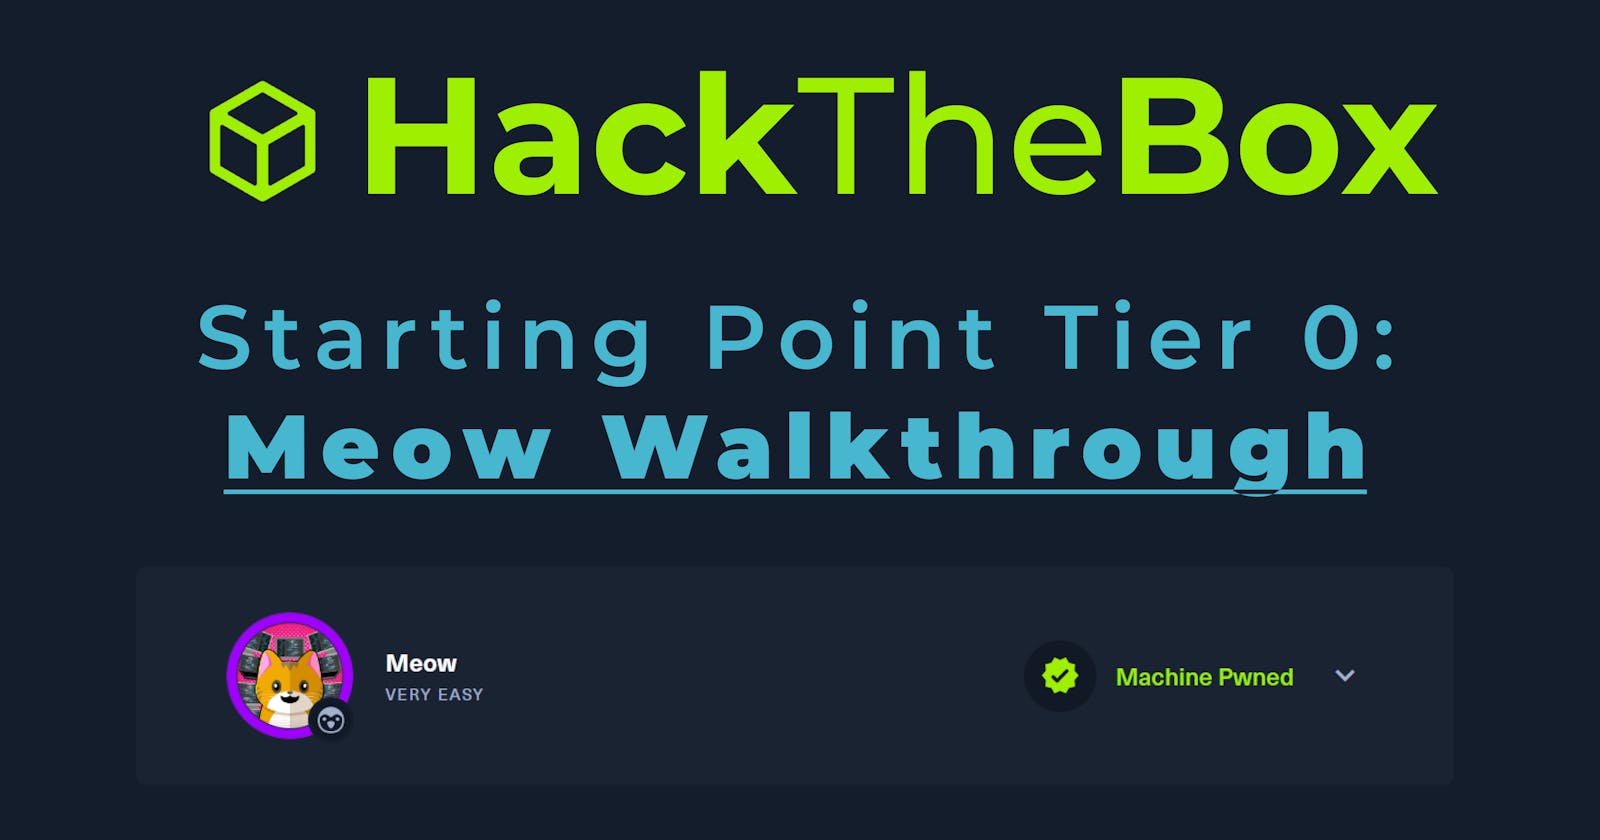 HackTheBox Starting Point Tier 0 machine: Meow Walkthrough